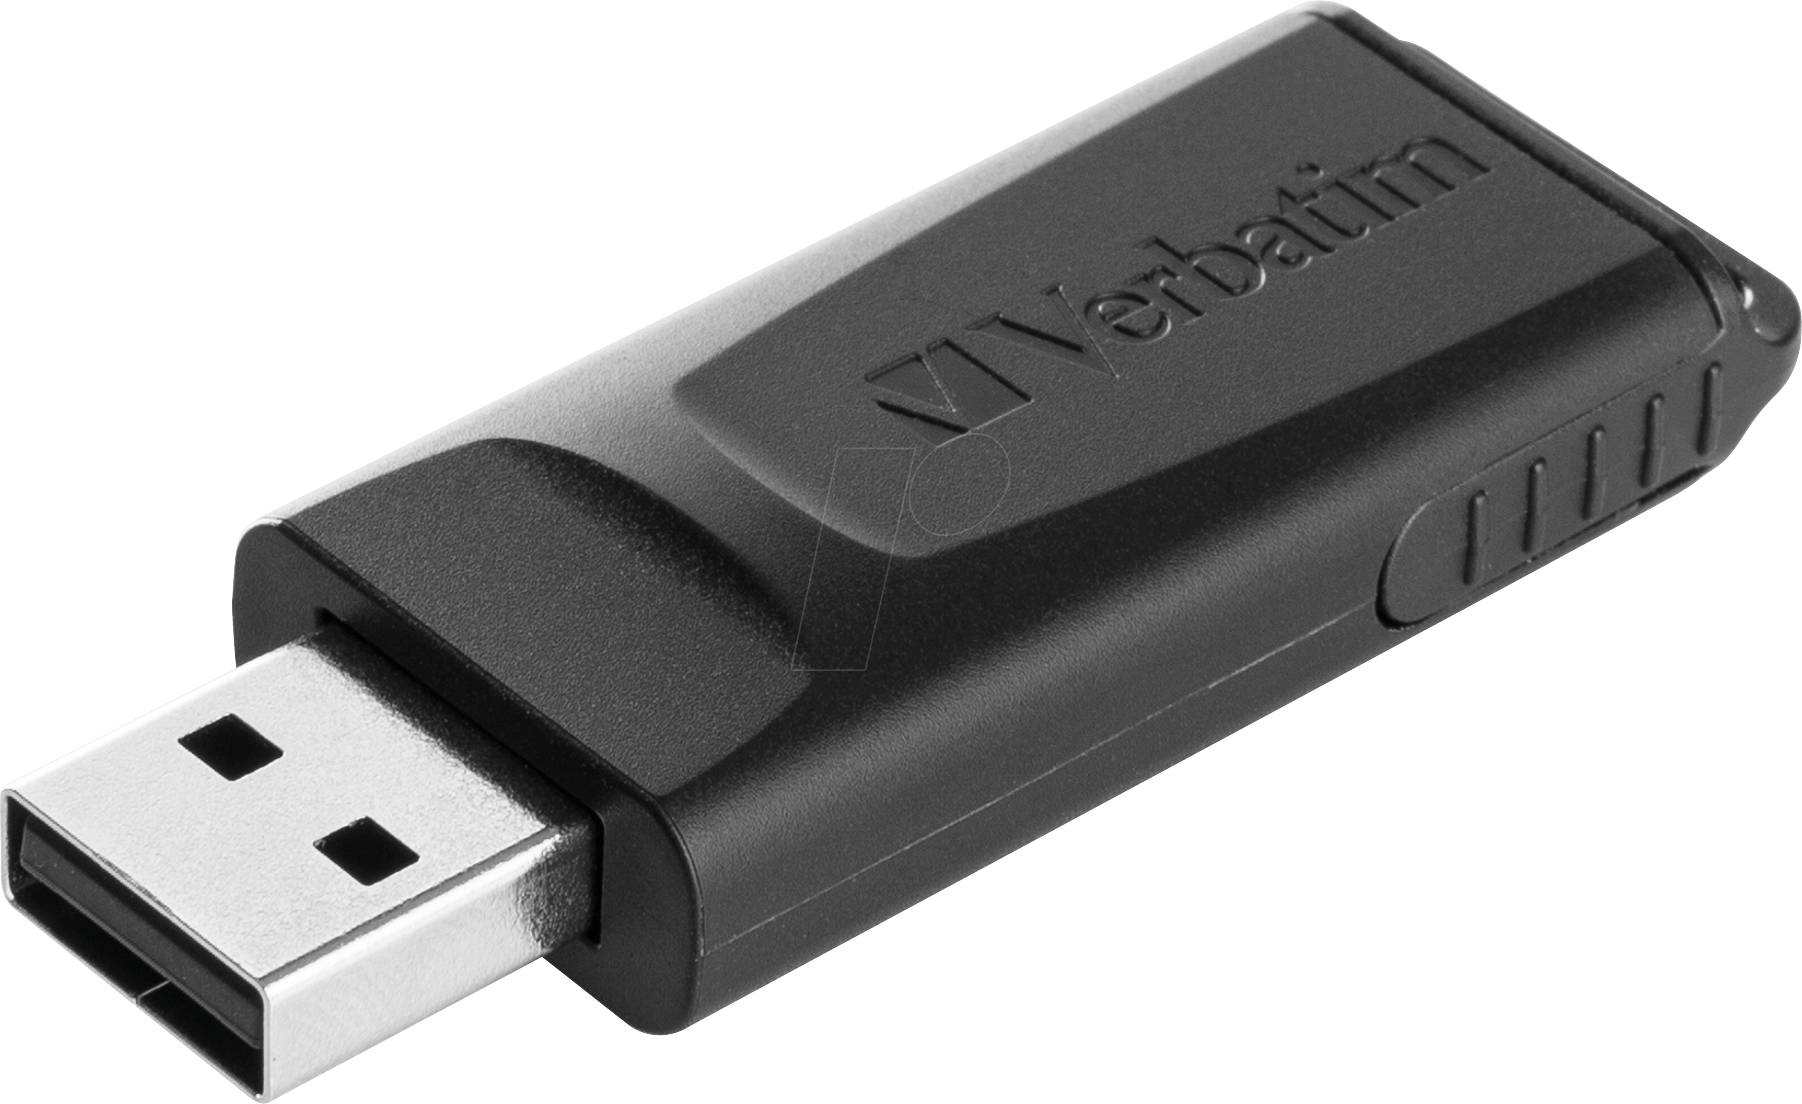 USB-Stick, USB 2.0, 128 GB, Slider